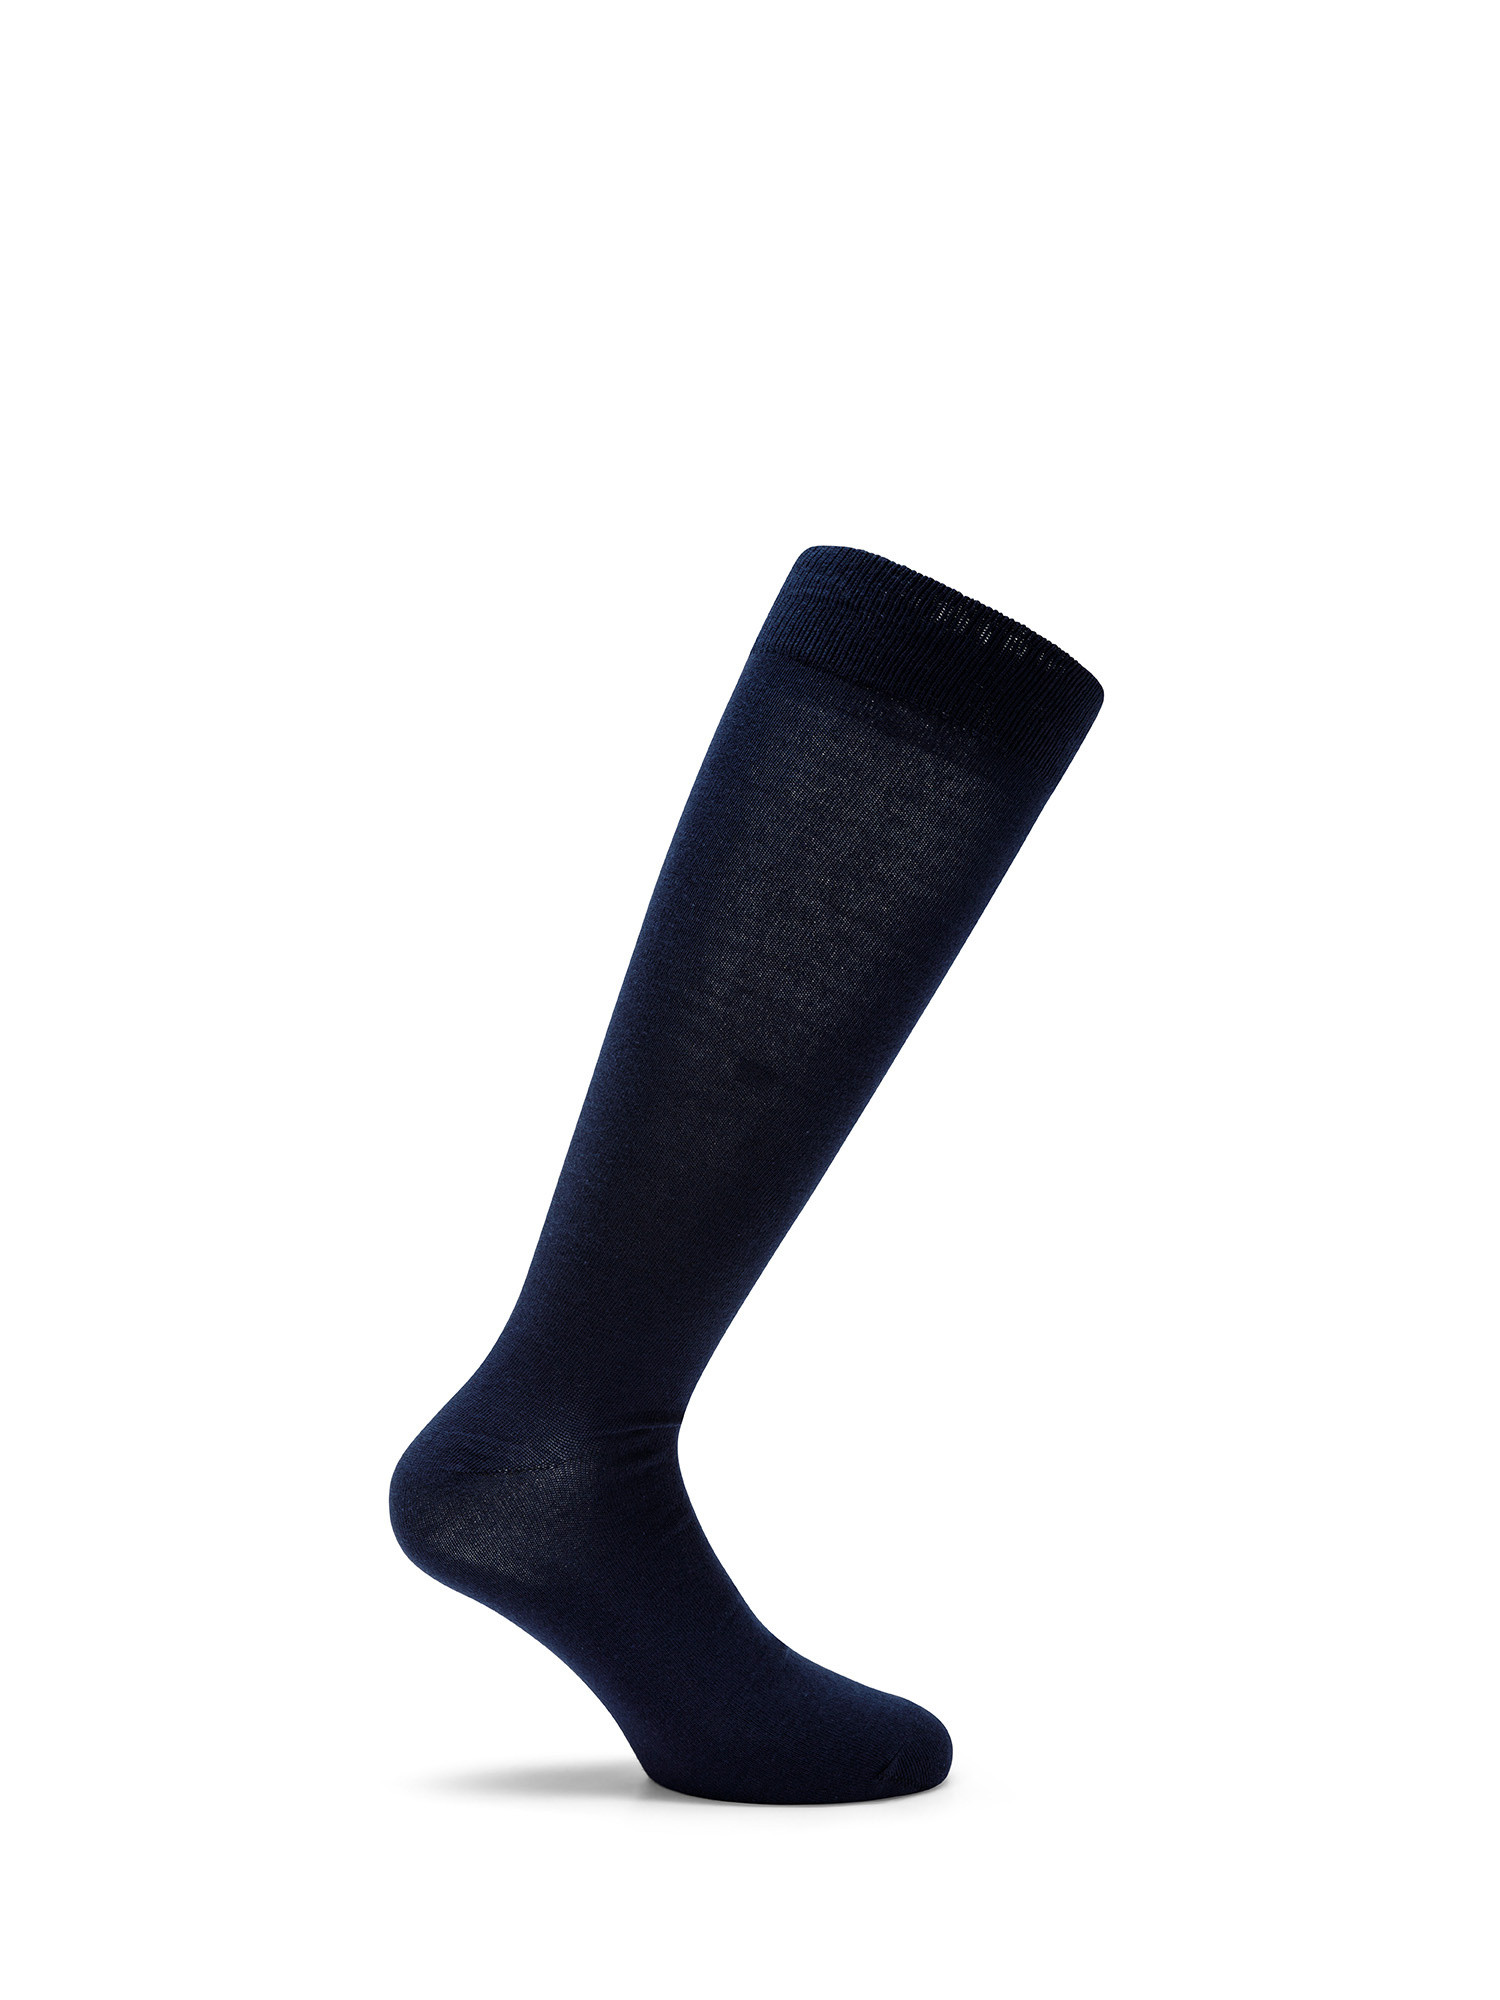 Luca D'Altieri - Set of 3 patterned long socks, Dark Blue, large image number 2